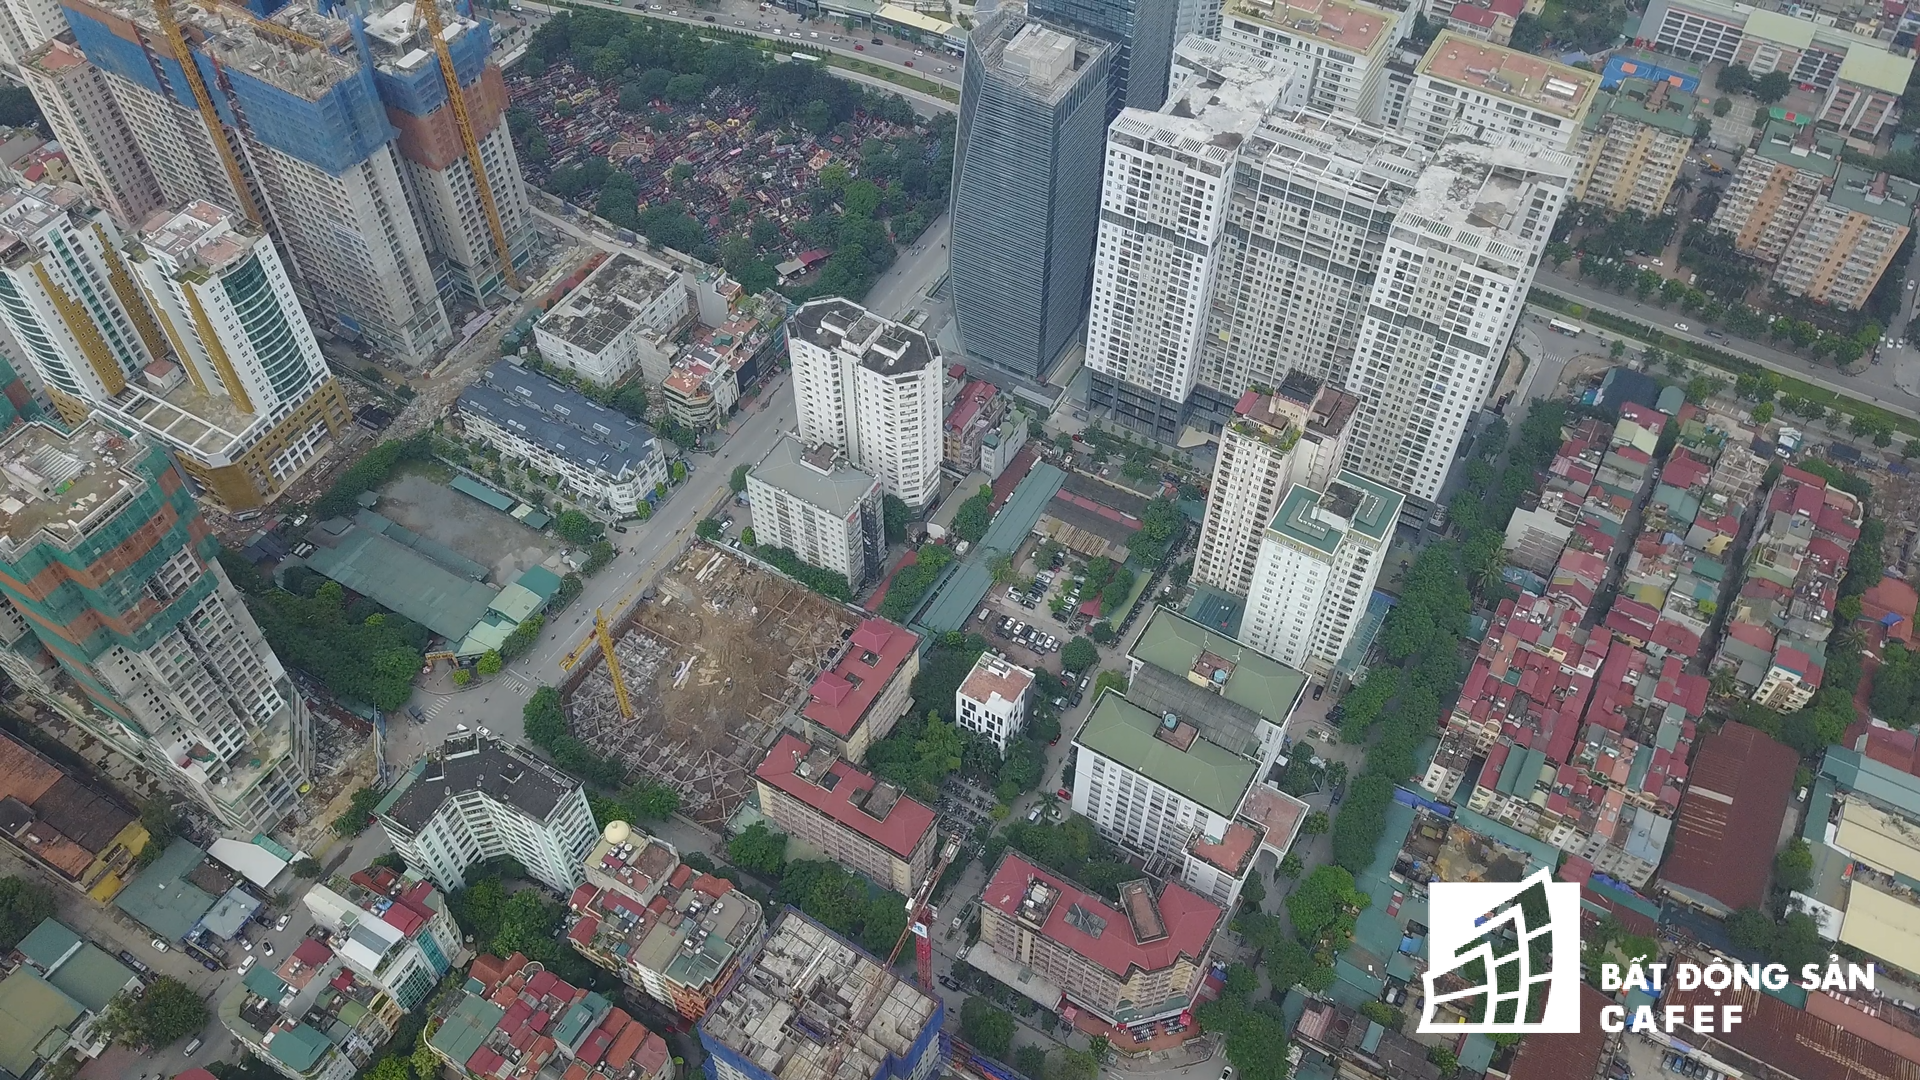 
Các cao ốc Golden West, The Legend, Comatex Tower, Việt Đức Complex với hàng nghìn căn hộ chung cư bao vây trên một đoạn đường ngắn Nguyễn Tuân.
